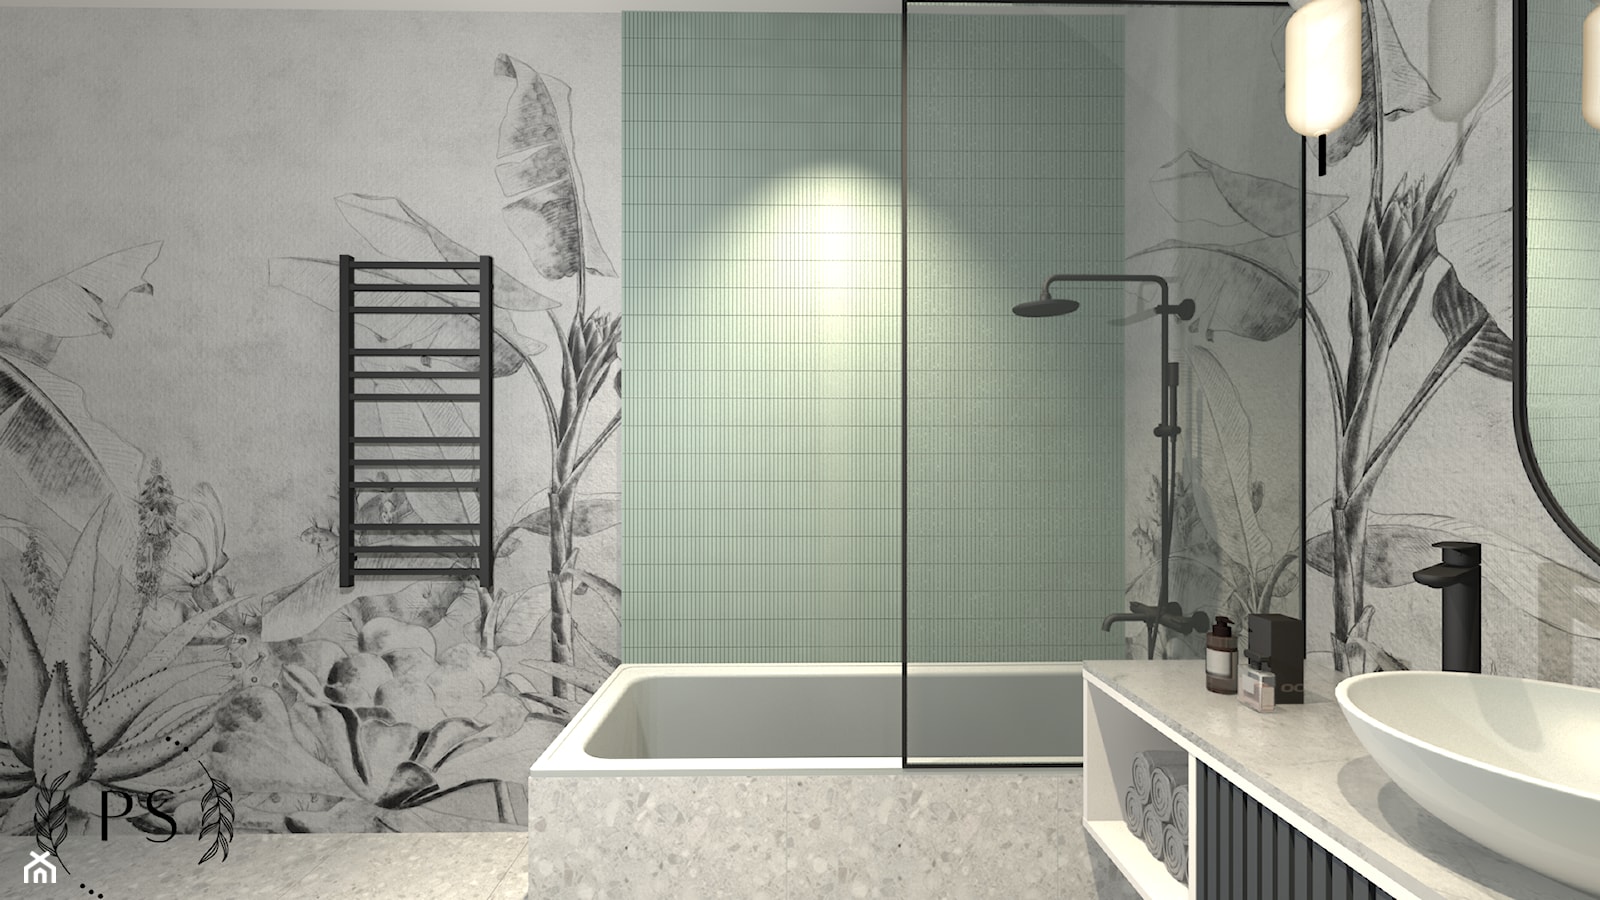 Łazienka w stylu nowoczesnym z mozaiką w miętowym odcieniu zieleni. - zdjęcie od piękno stylu - Homebook